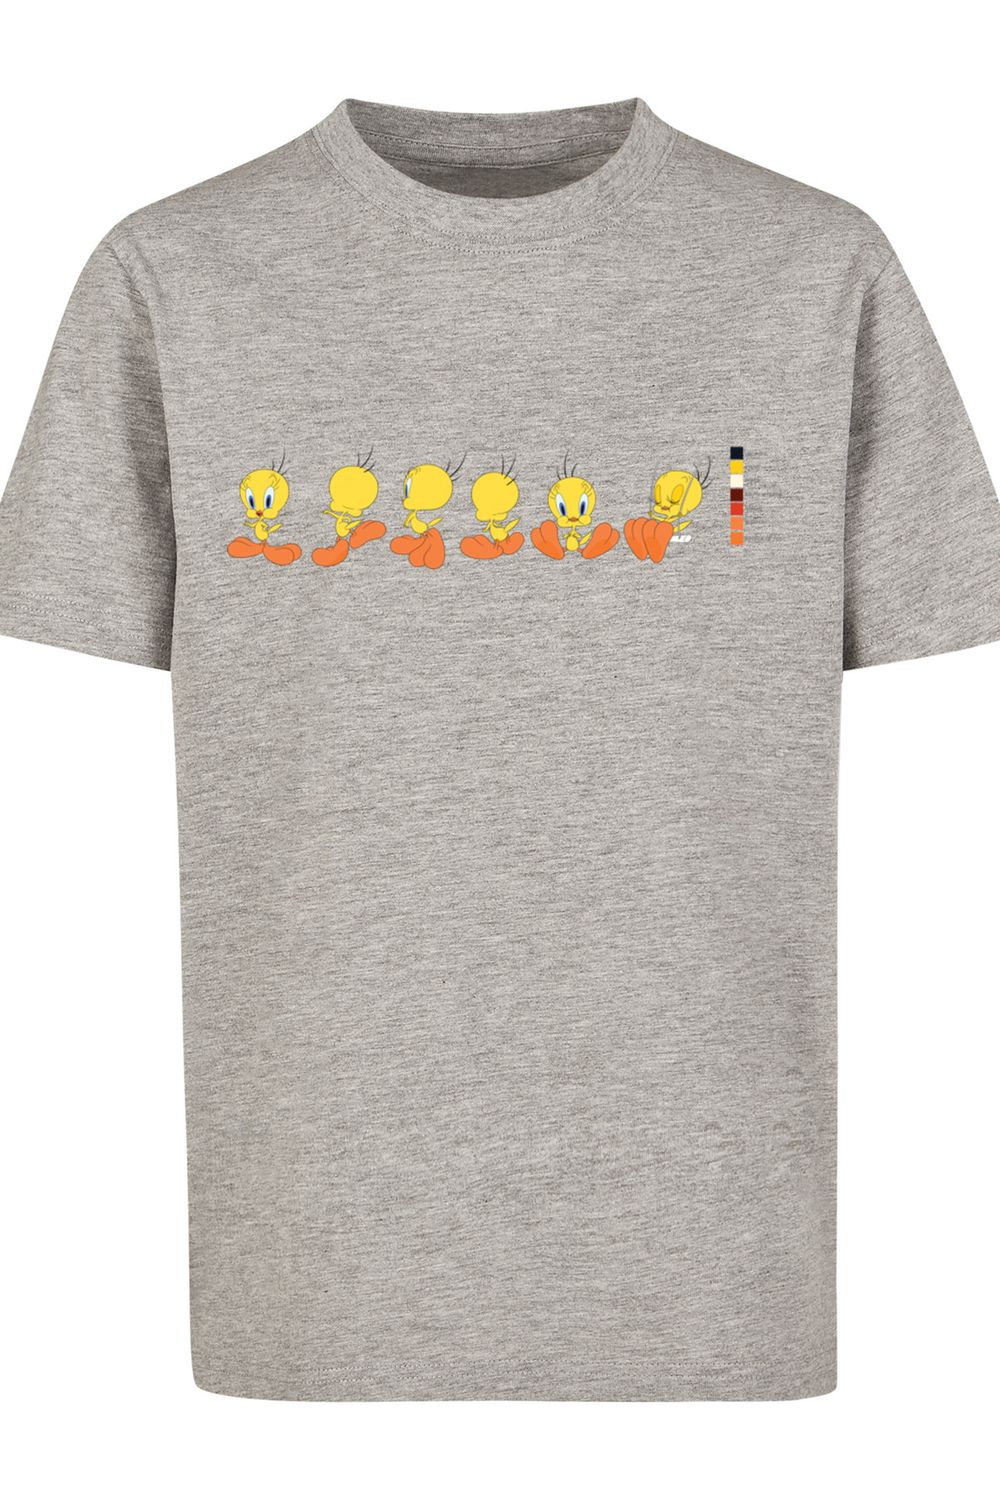 F4NT4STIC Kinder Tweety - Pie Tunes Looney mit Kids Basic Trendyol T-Shirt Farbcode-WHT